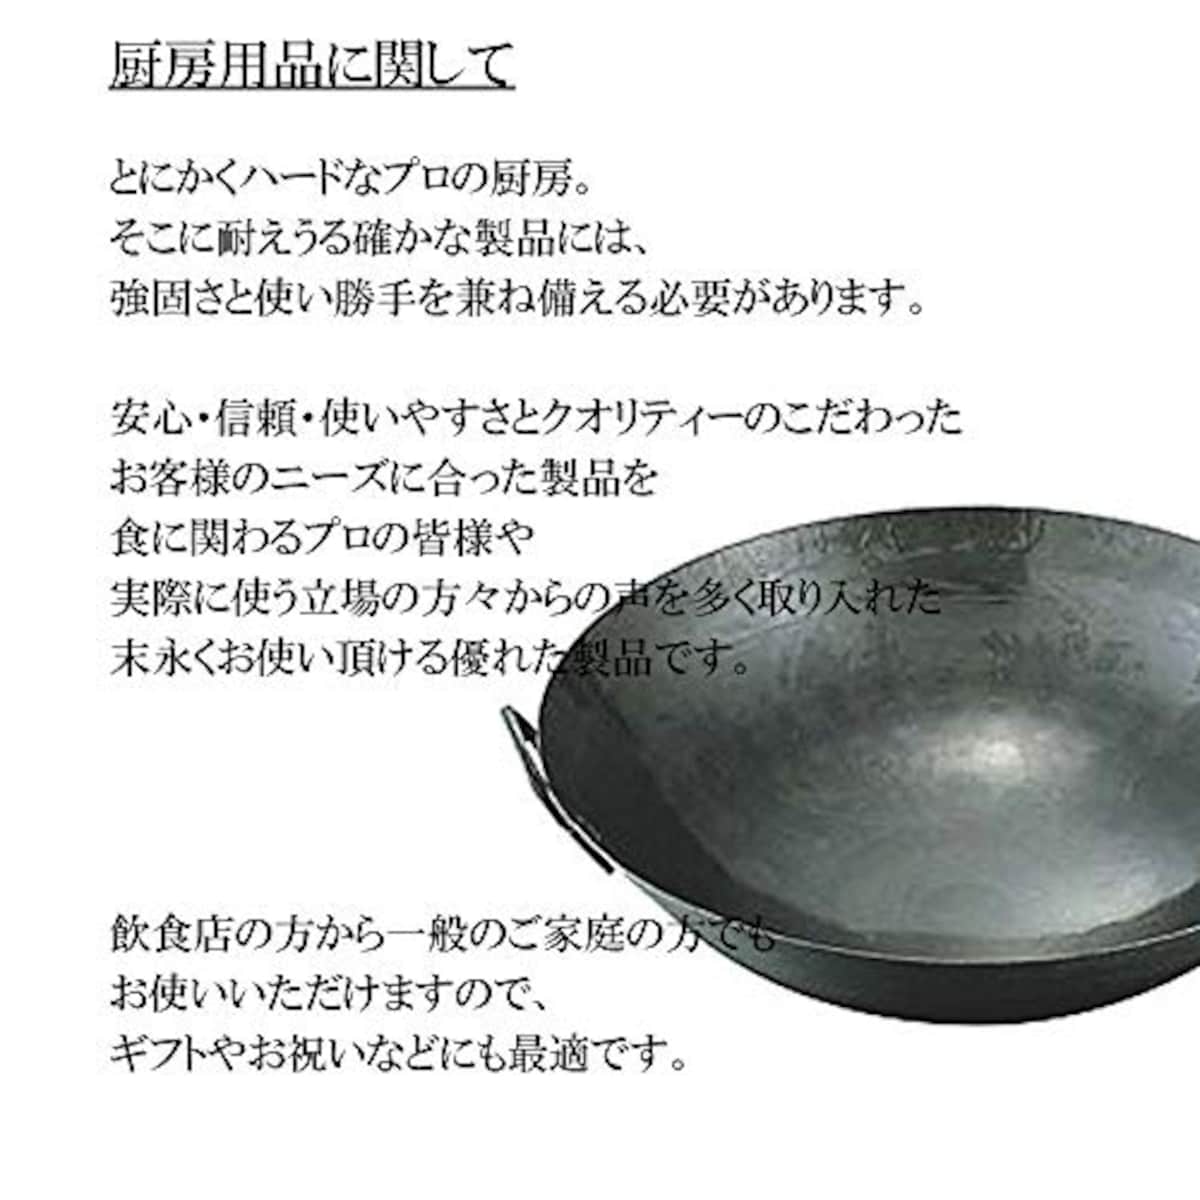  マイスタープレミアムフライパン 26cm [ 26cm 710g ] [ フライパン ] | 厨房 キッチン 台所 調理 業務用画像2 